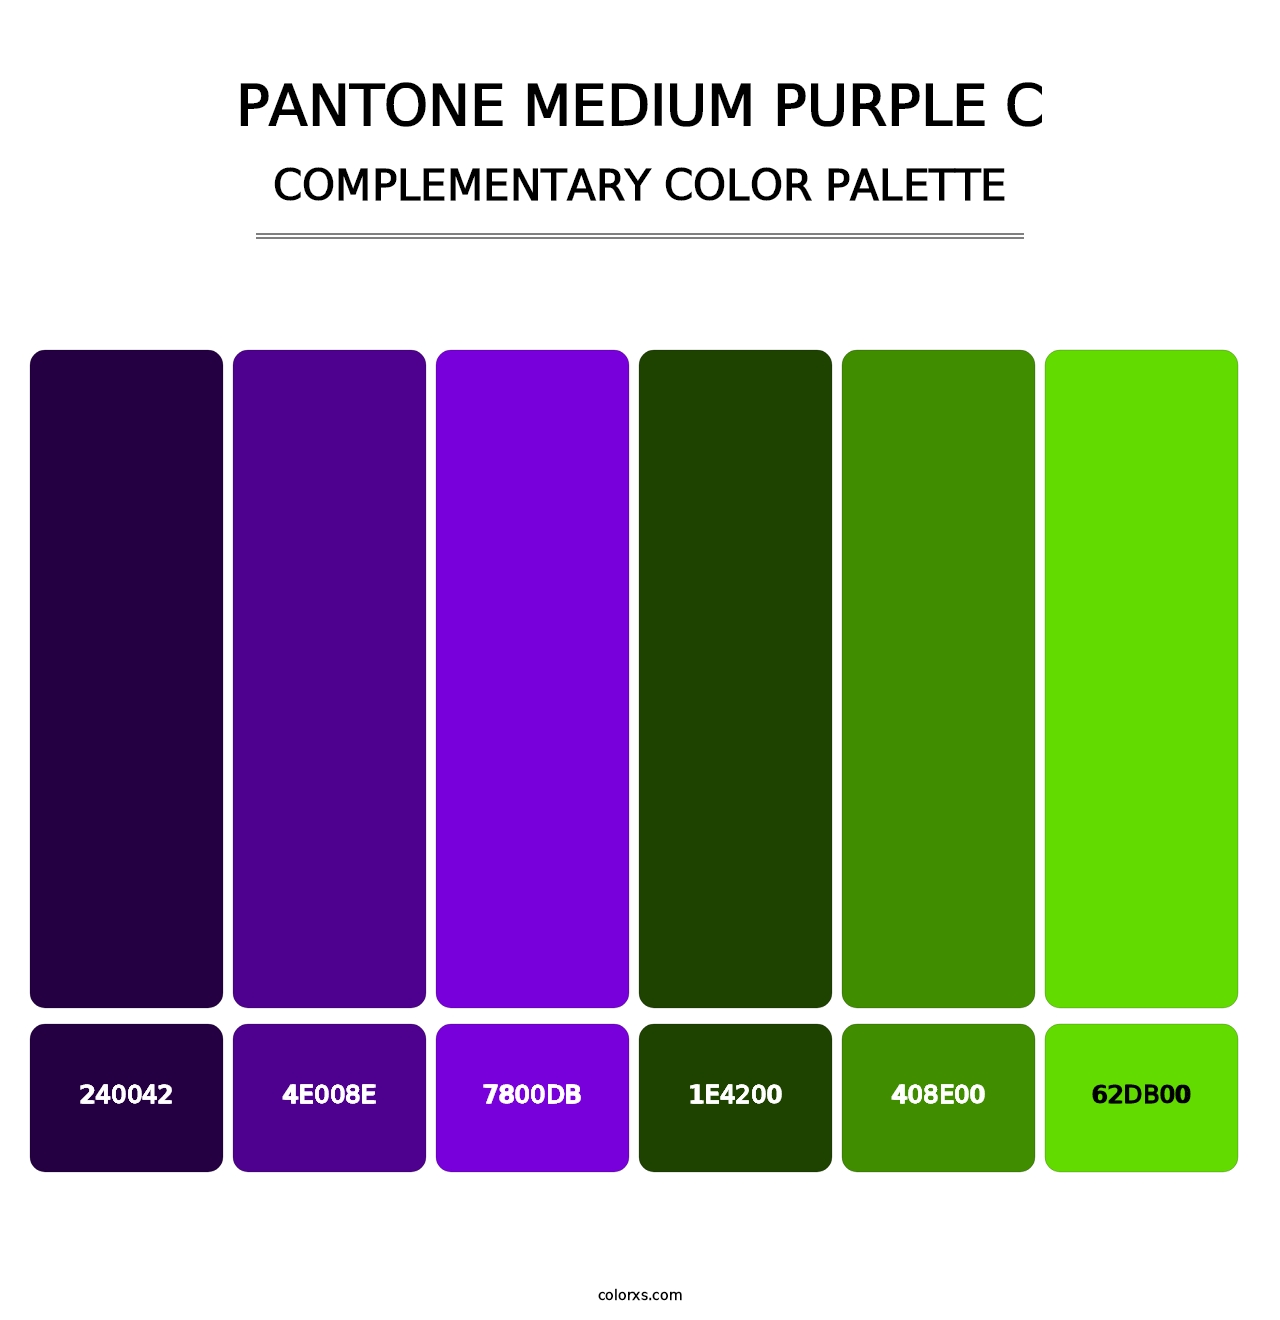 PANTONE Medium Purple C - Complementary Color Palette